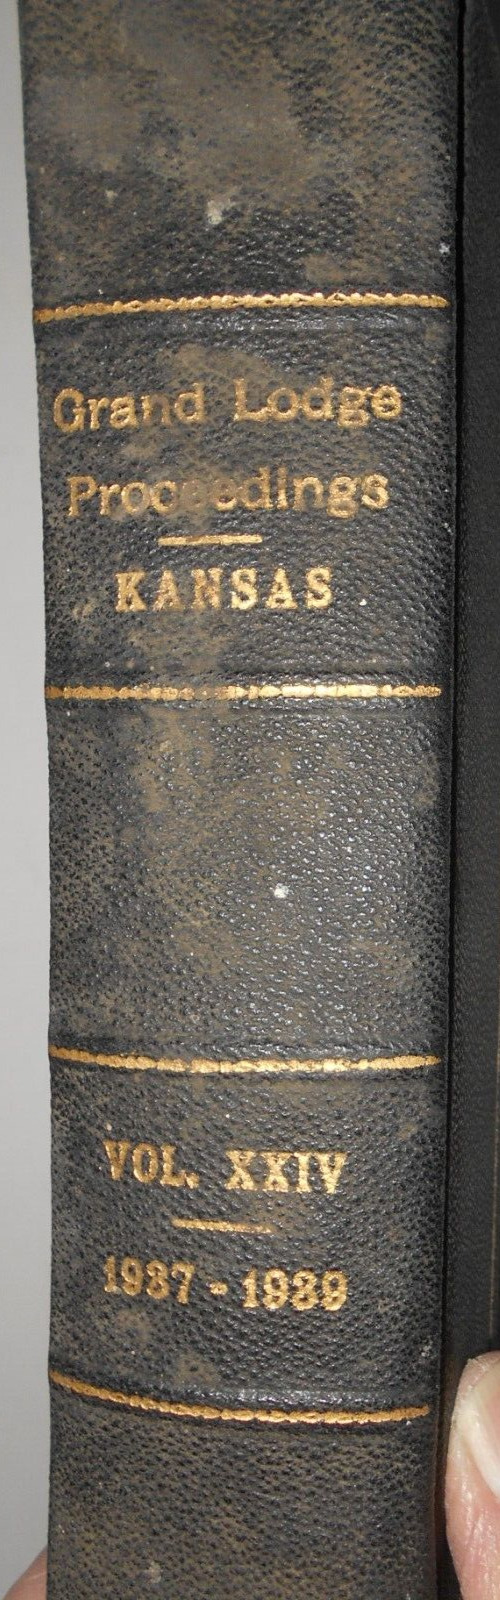 1937 Grand Lodge Proceedings Kansas Vol. xx1v, 1987-1989